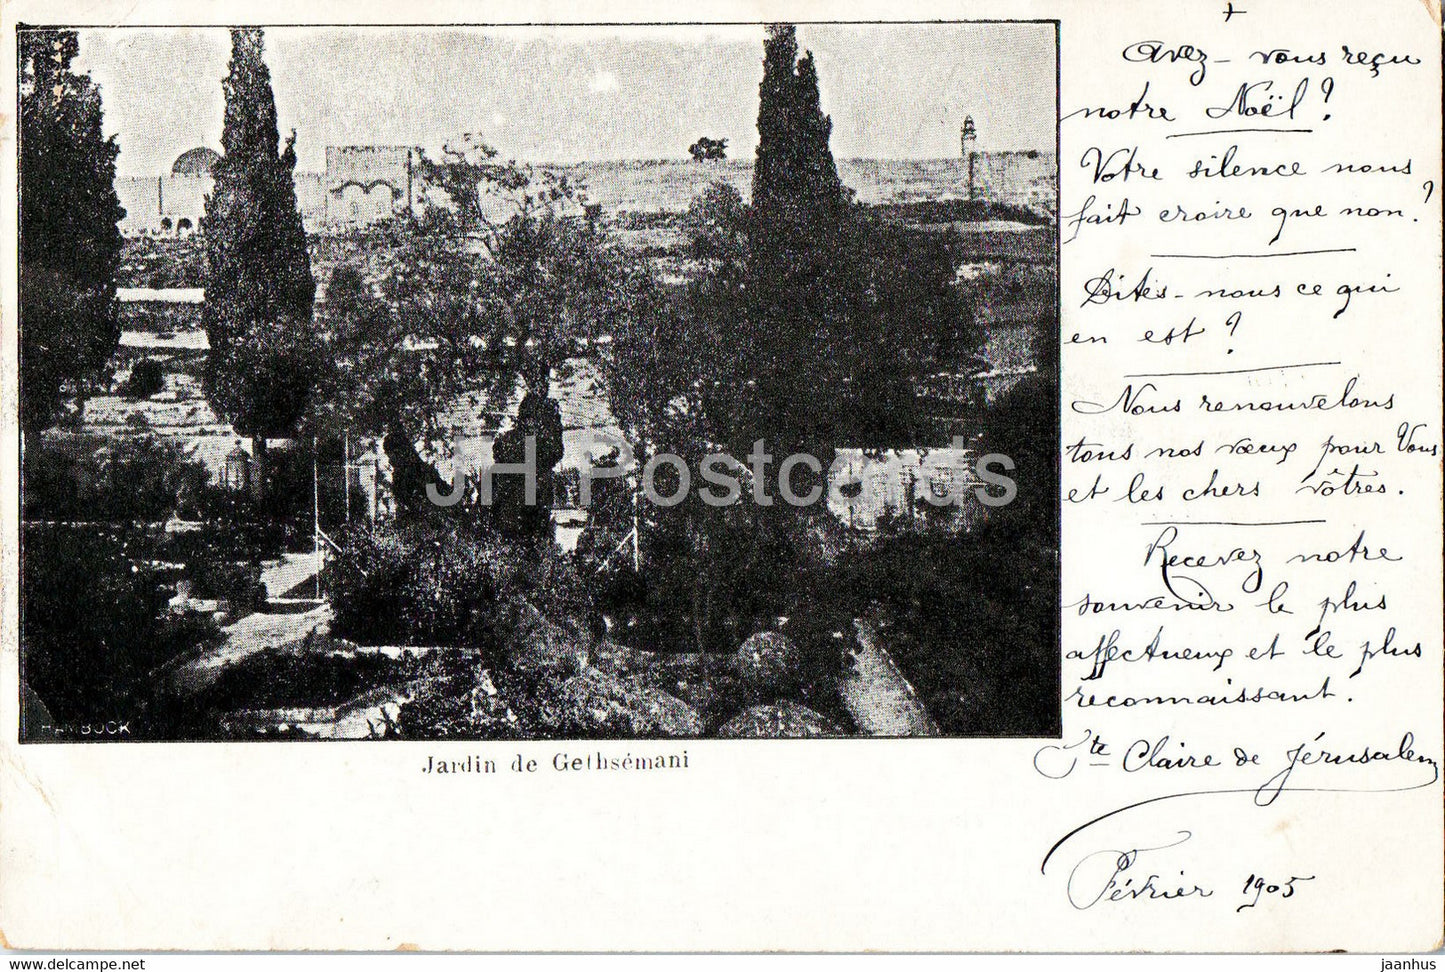 Jardin de Gethsemani -  old postcard - 1905 - Israel - used - JH Postcards